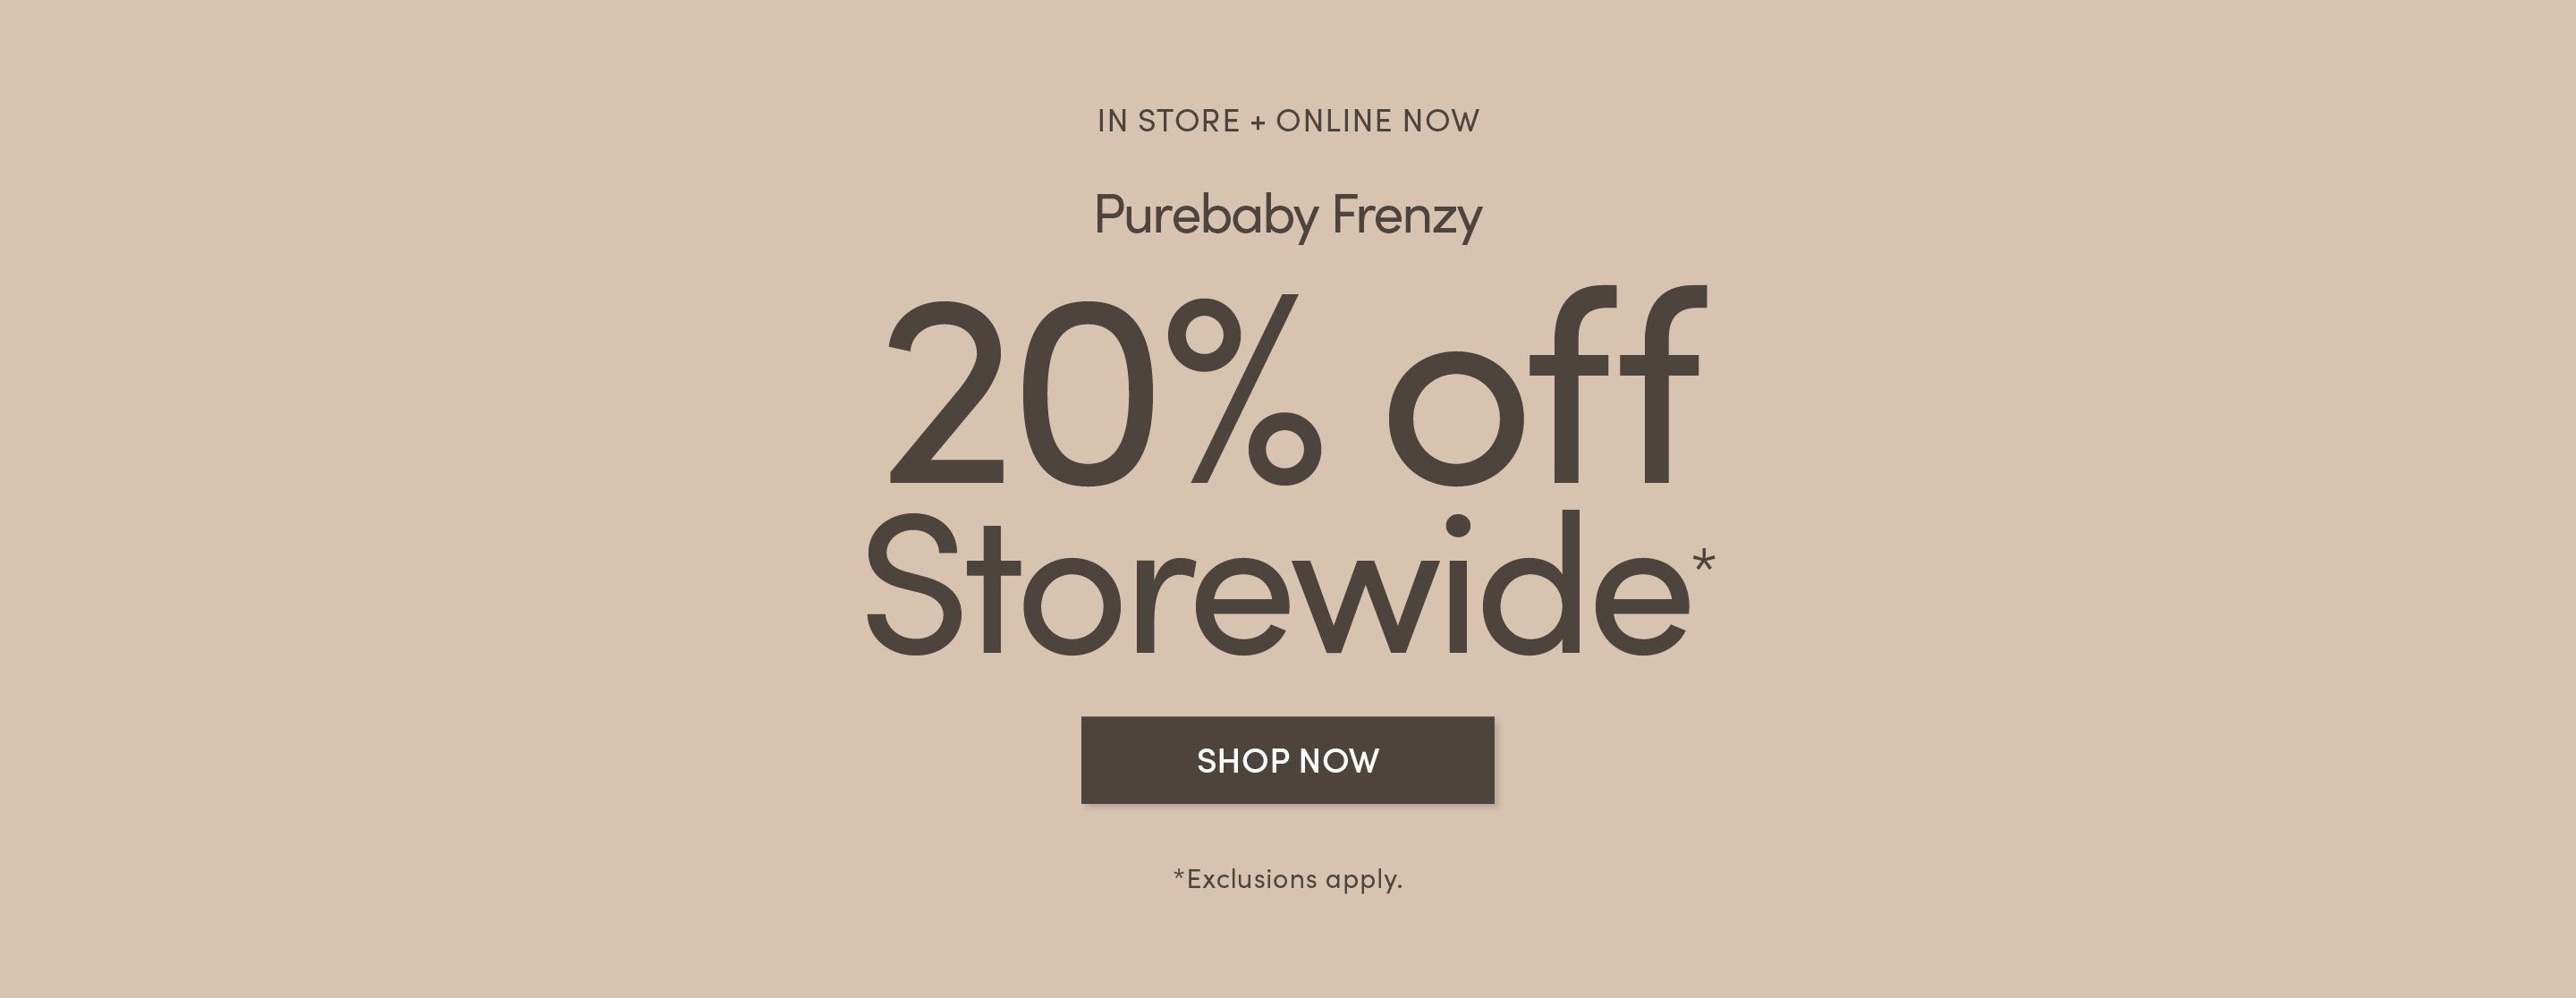 20% off Storewide - Purebaby